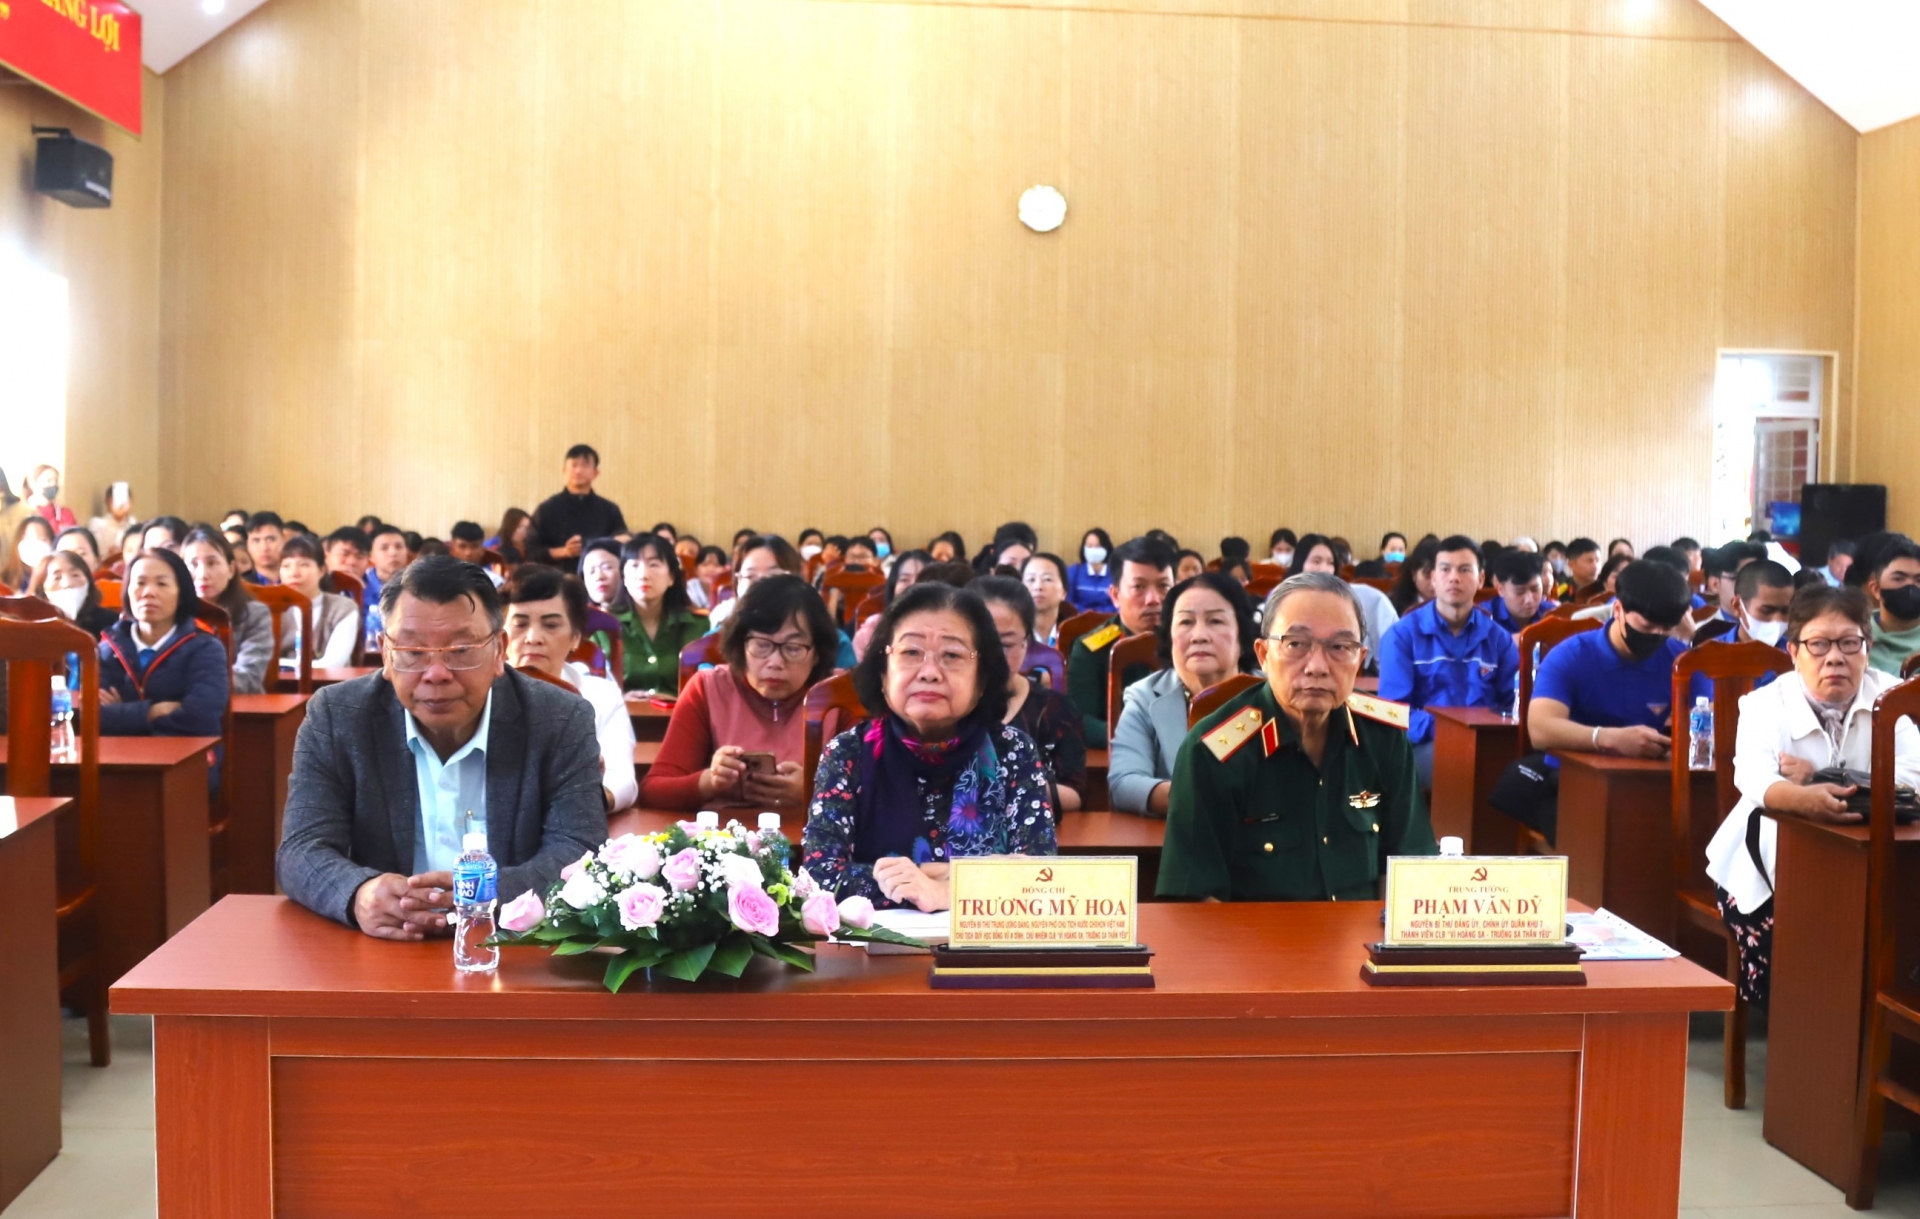 Nguyên Phó Chủ tịch nước Trương Mỹ Hoa và Trung tướng Phạm Văn Vỹ cùng Phó trưởng Đoàn địa biểu Quốc hội đơn vị tỉnh Lâm Đồng Nguyễn Tạo dự buổi lễ